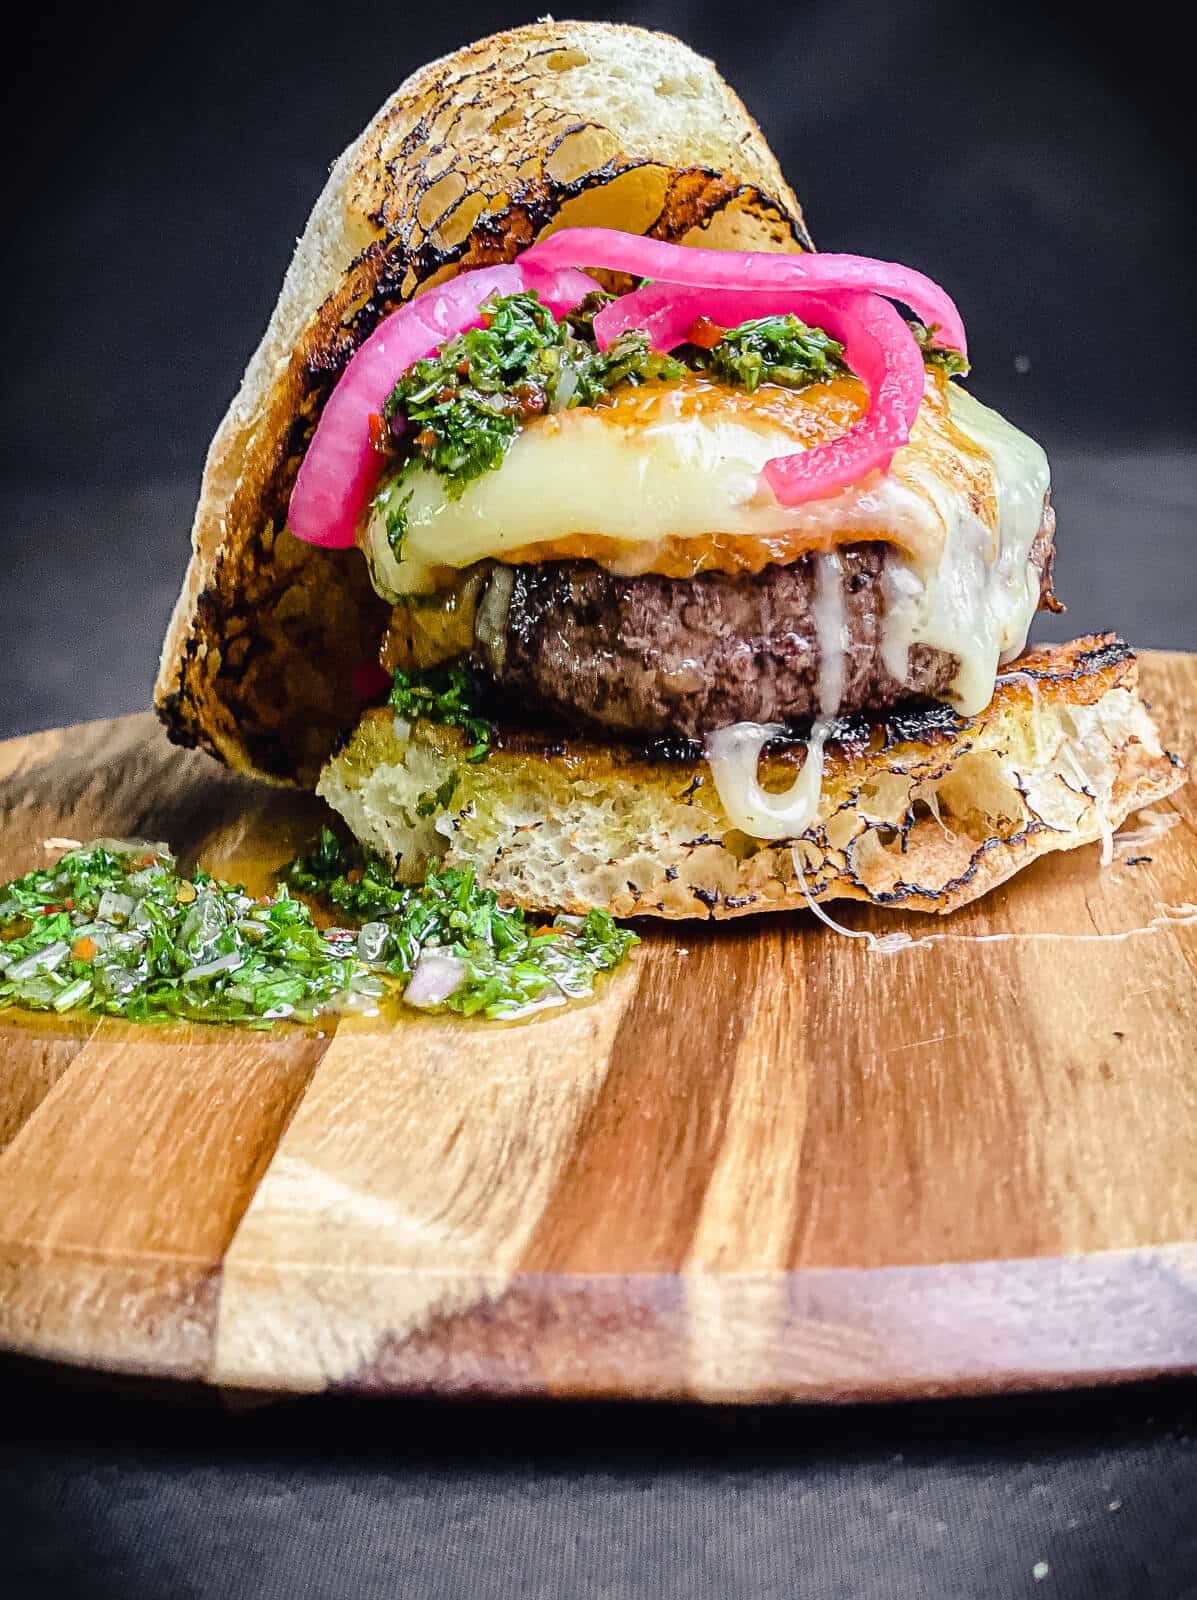 provoleta burger on a cutting board